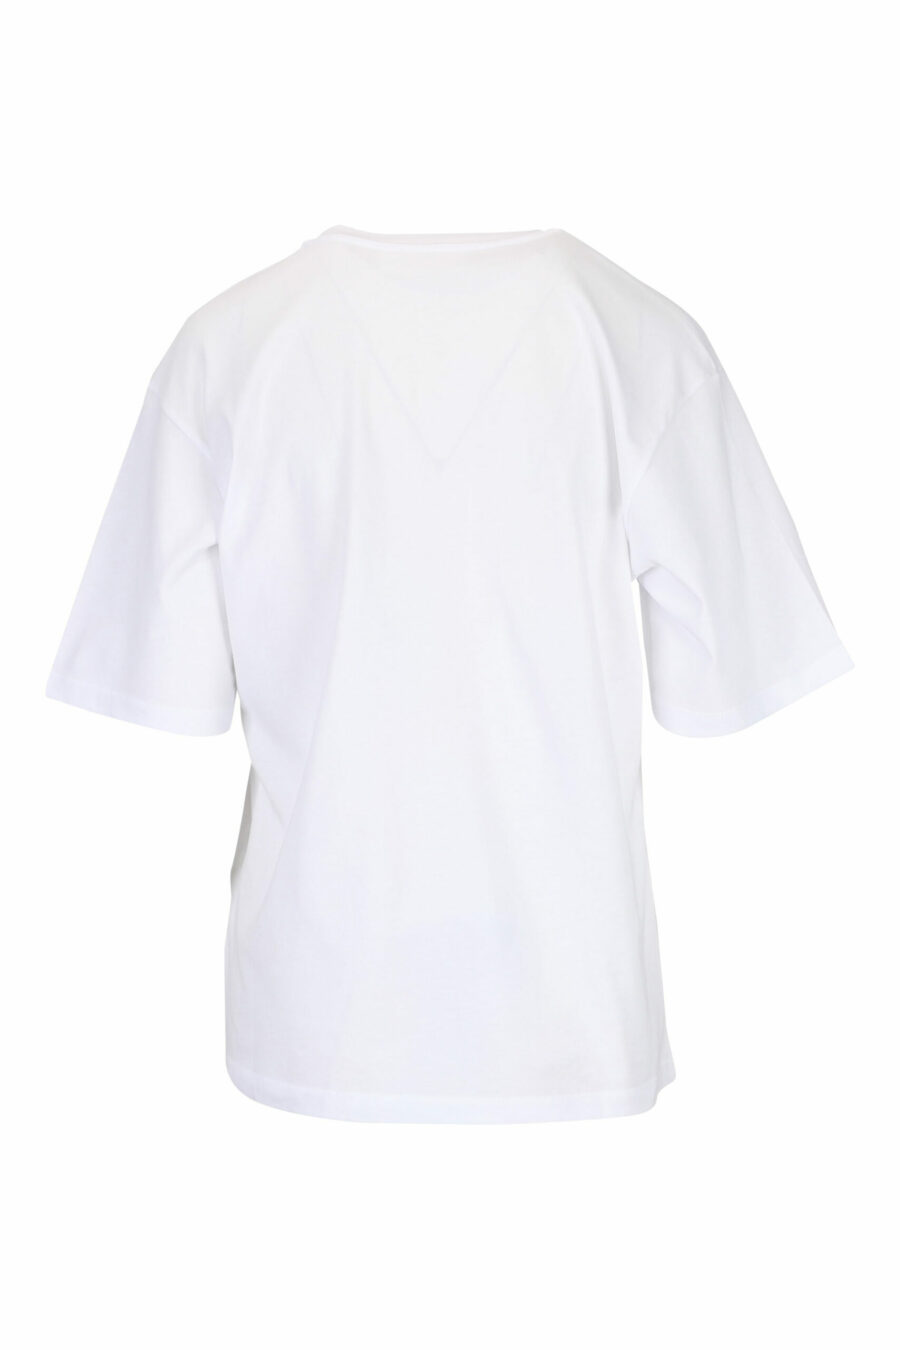 Camiseta blanca con estampado de corazón - 29710541060133 1 scaled